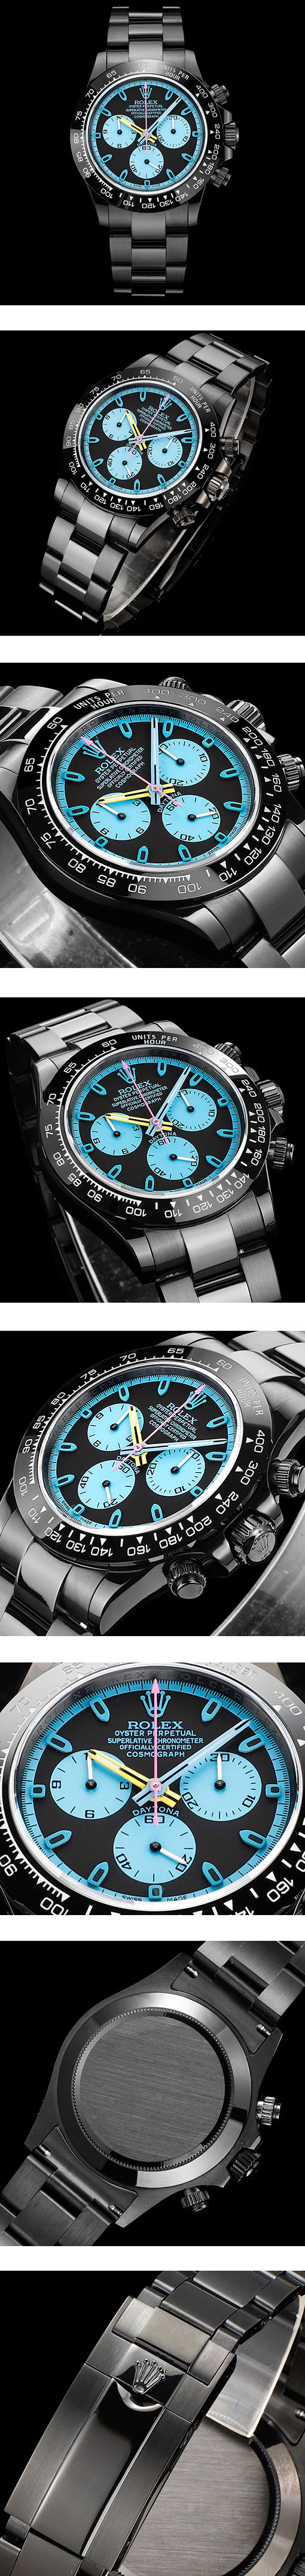 超薄型！ロレックスBLAKEN高級改装 デイトナN級品ブランドコピー腕時計 7750搭載！40mm